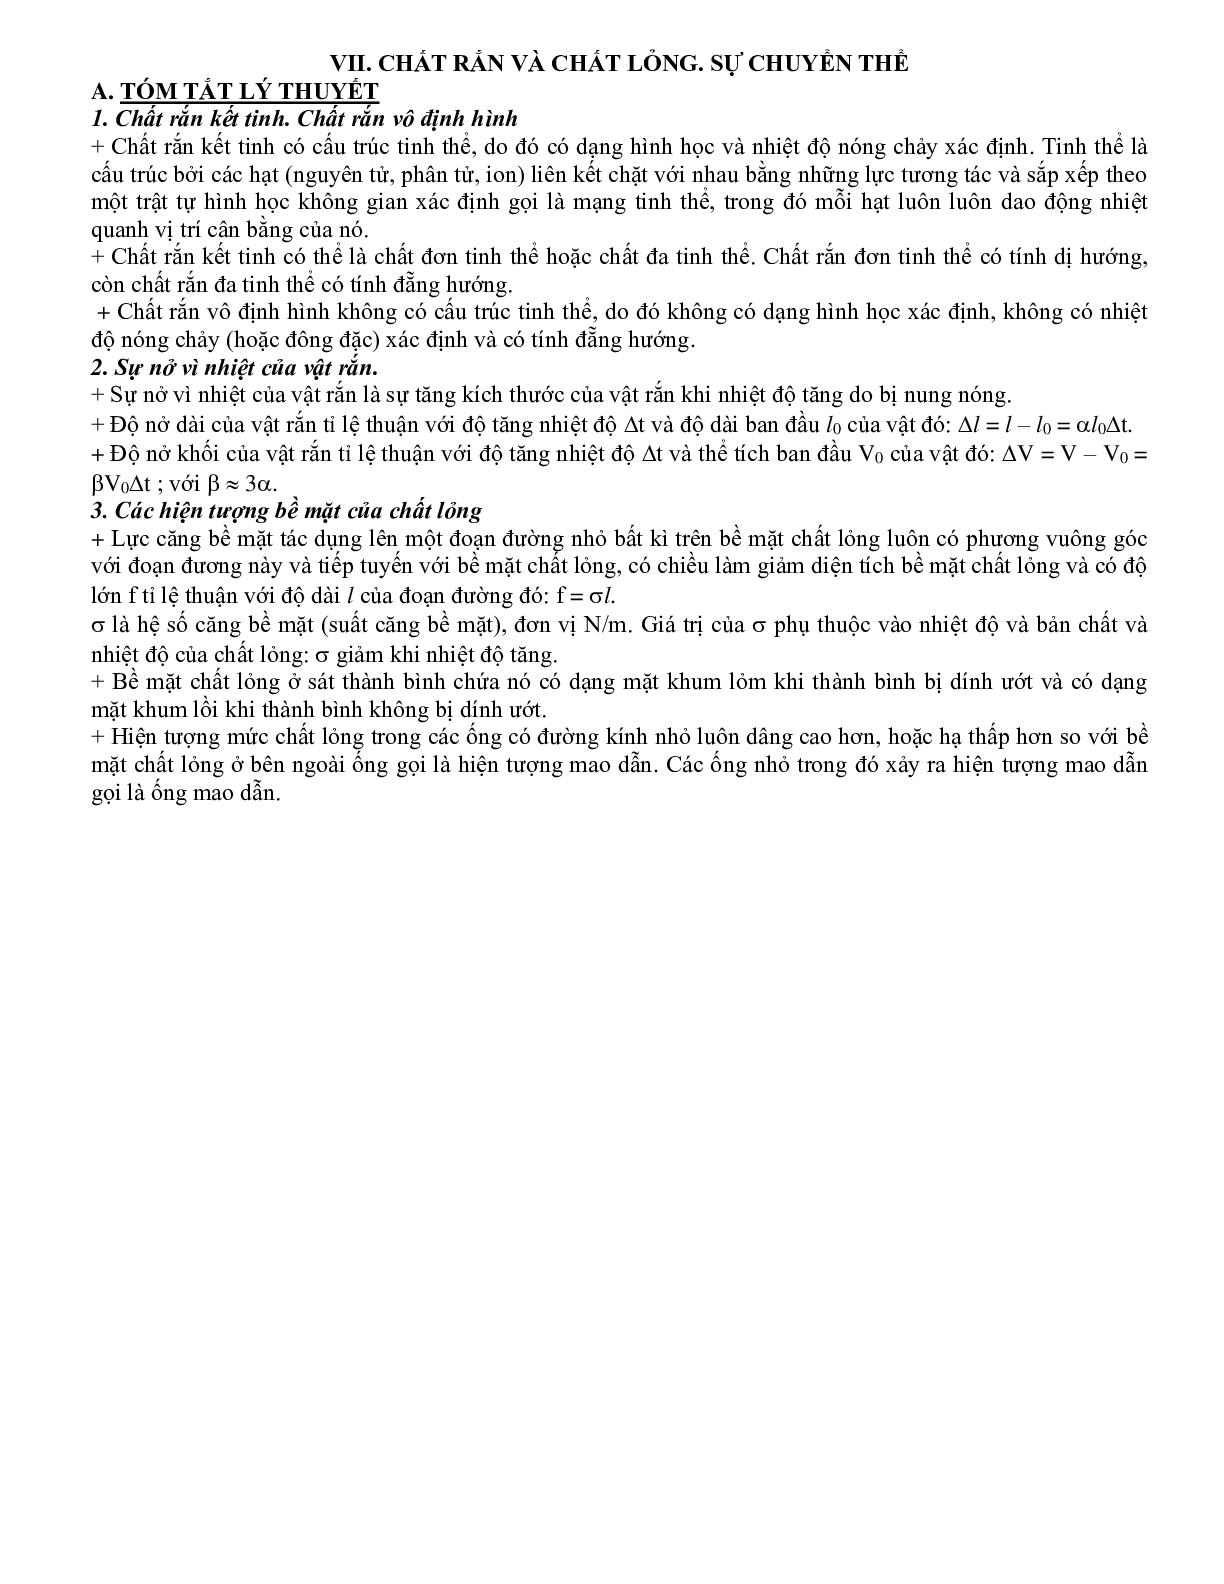 Dạng bài tập Chất rắn và chất lỏng, sự chuyển thể môn Vật lý lớp 10 (trang 1)